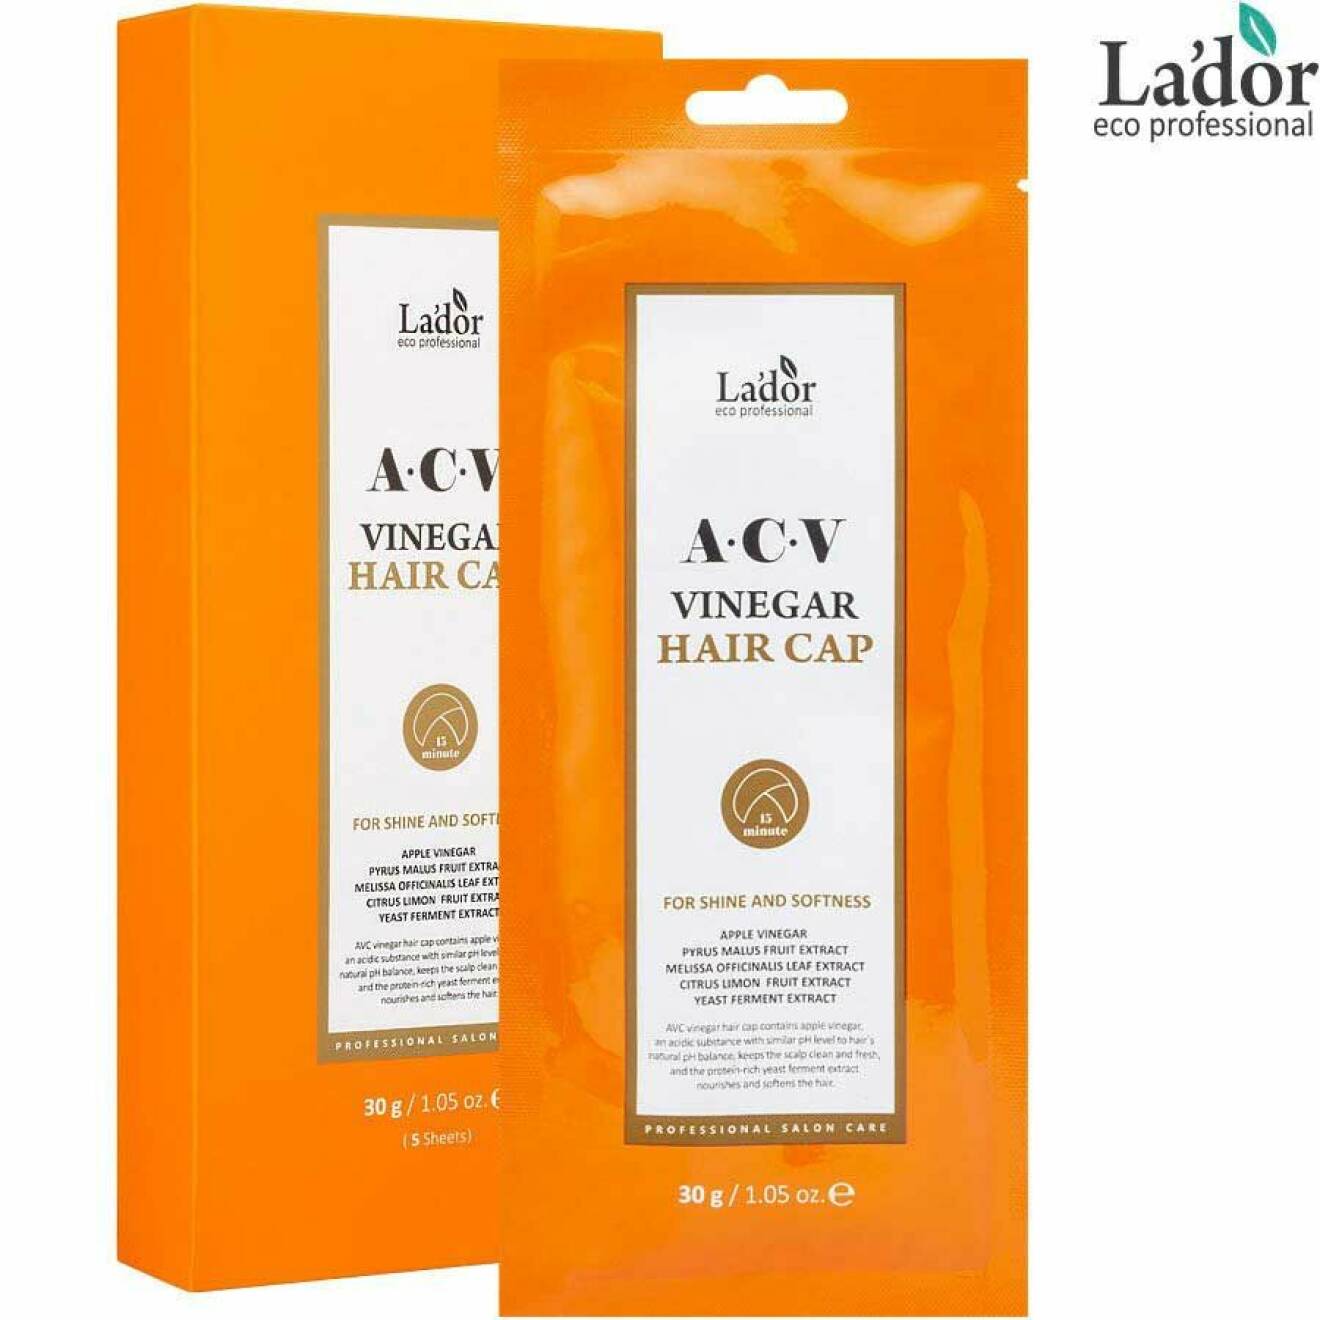 ACV Vinegar Hair Cap från La’dor.